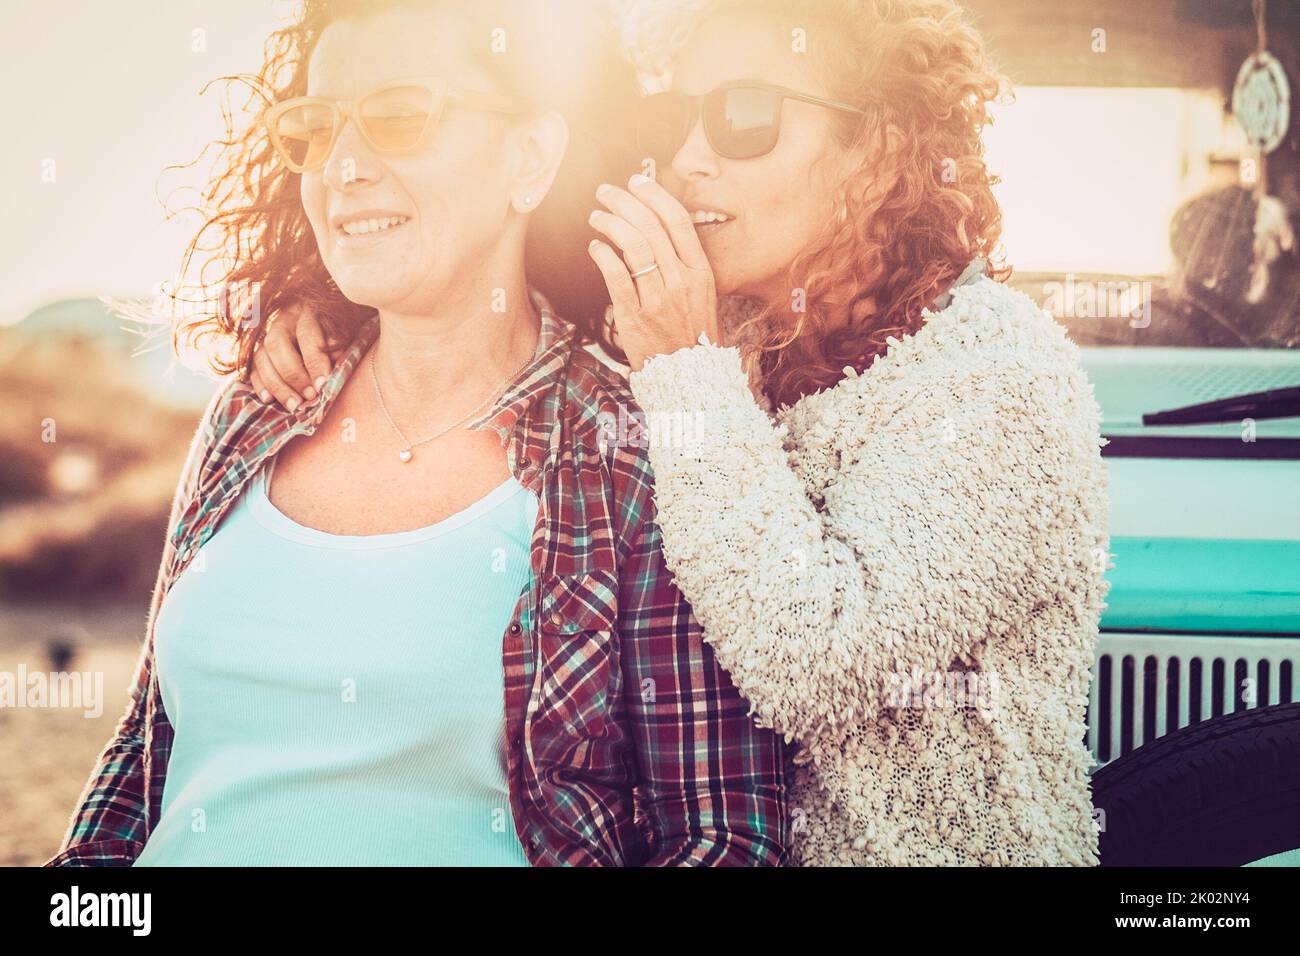 Ein paar junge Erwachsene Frauen sprechen zusammen in Outdoor-Freizeitreisen Aktivität mit Sonne im Hintergrund. Konzept von Freundschaft und Liebe. Lifestyle für Reisende. Urlaub Touristischer im Sommer Stockfoto